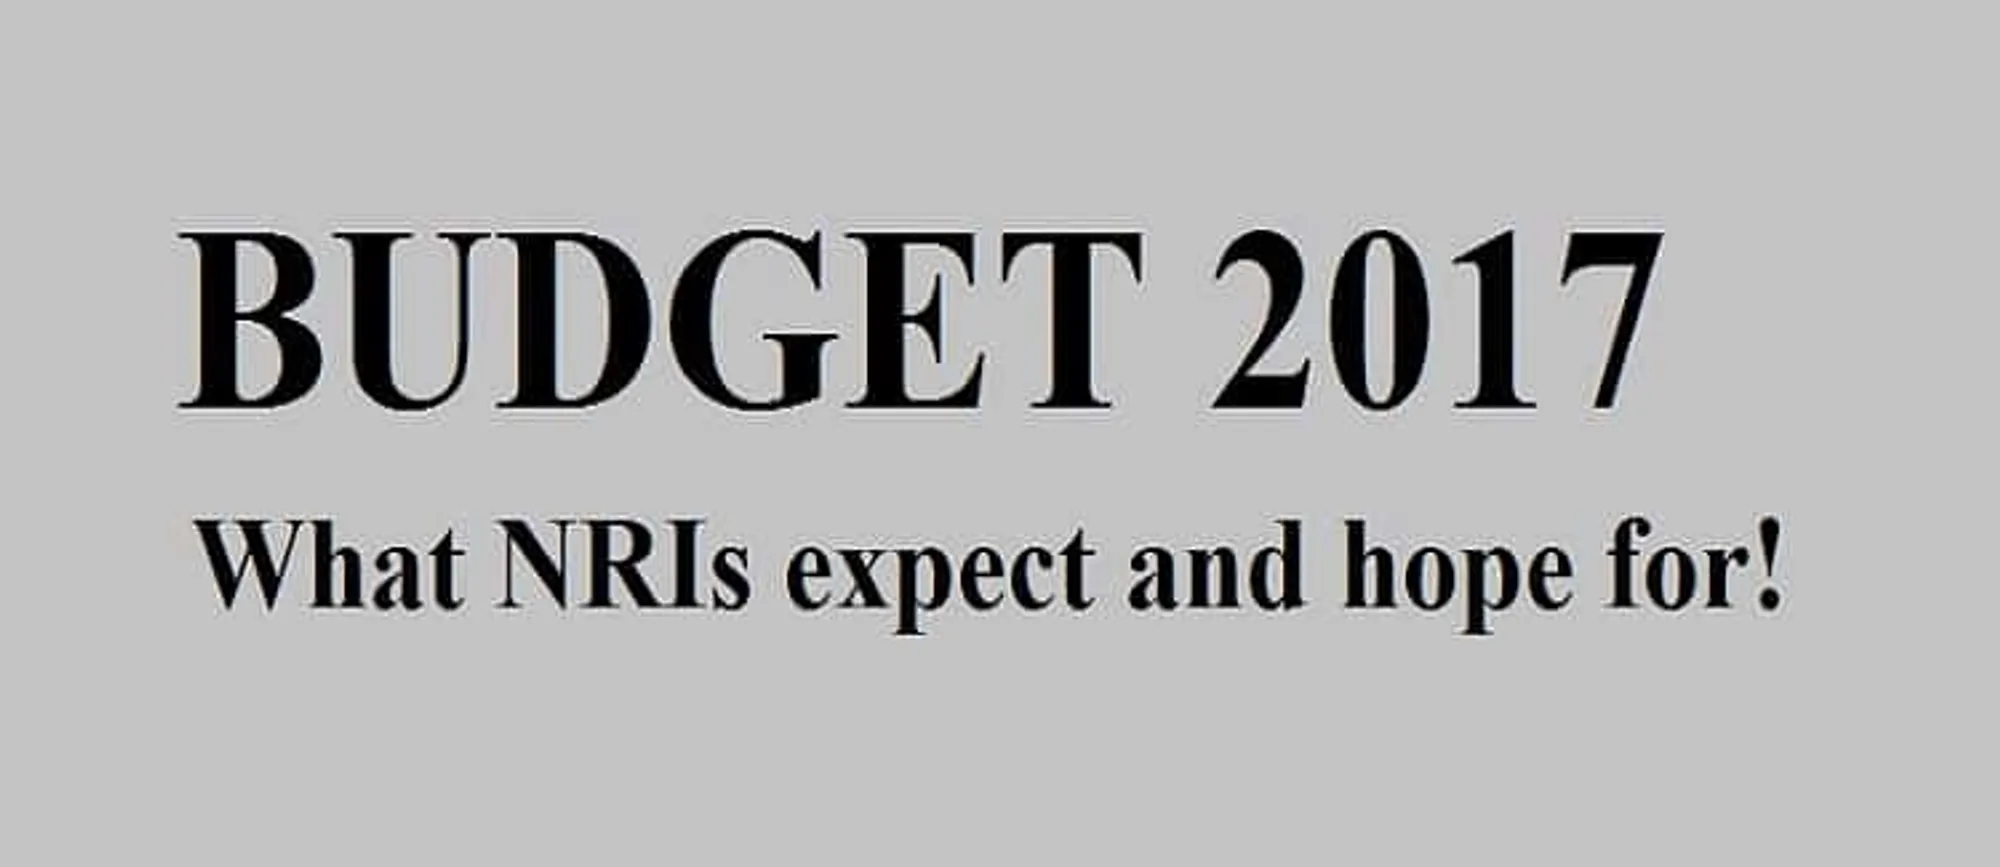 Budget 2017_NRIs